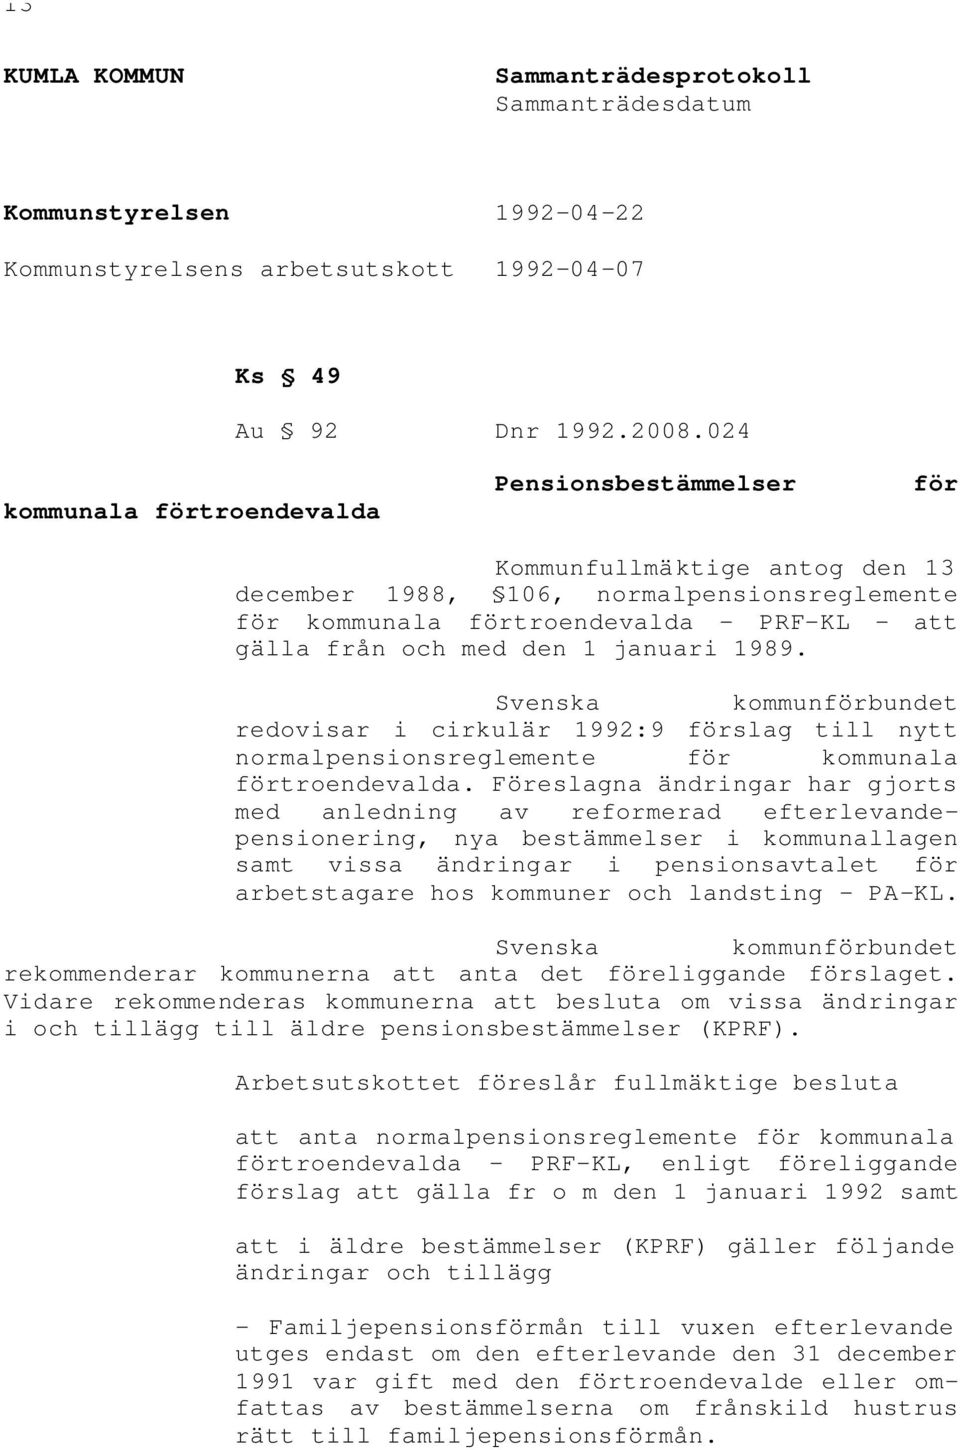 1 januari 1989. Svenska kommunförbundet redovisar i cirkulär 1992:9 förslag till nytt normalpensionsreglemente för kommunala förtroendevalda.